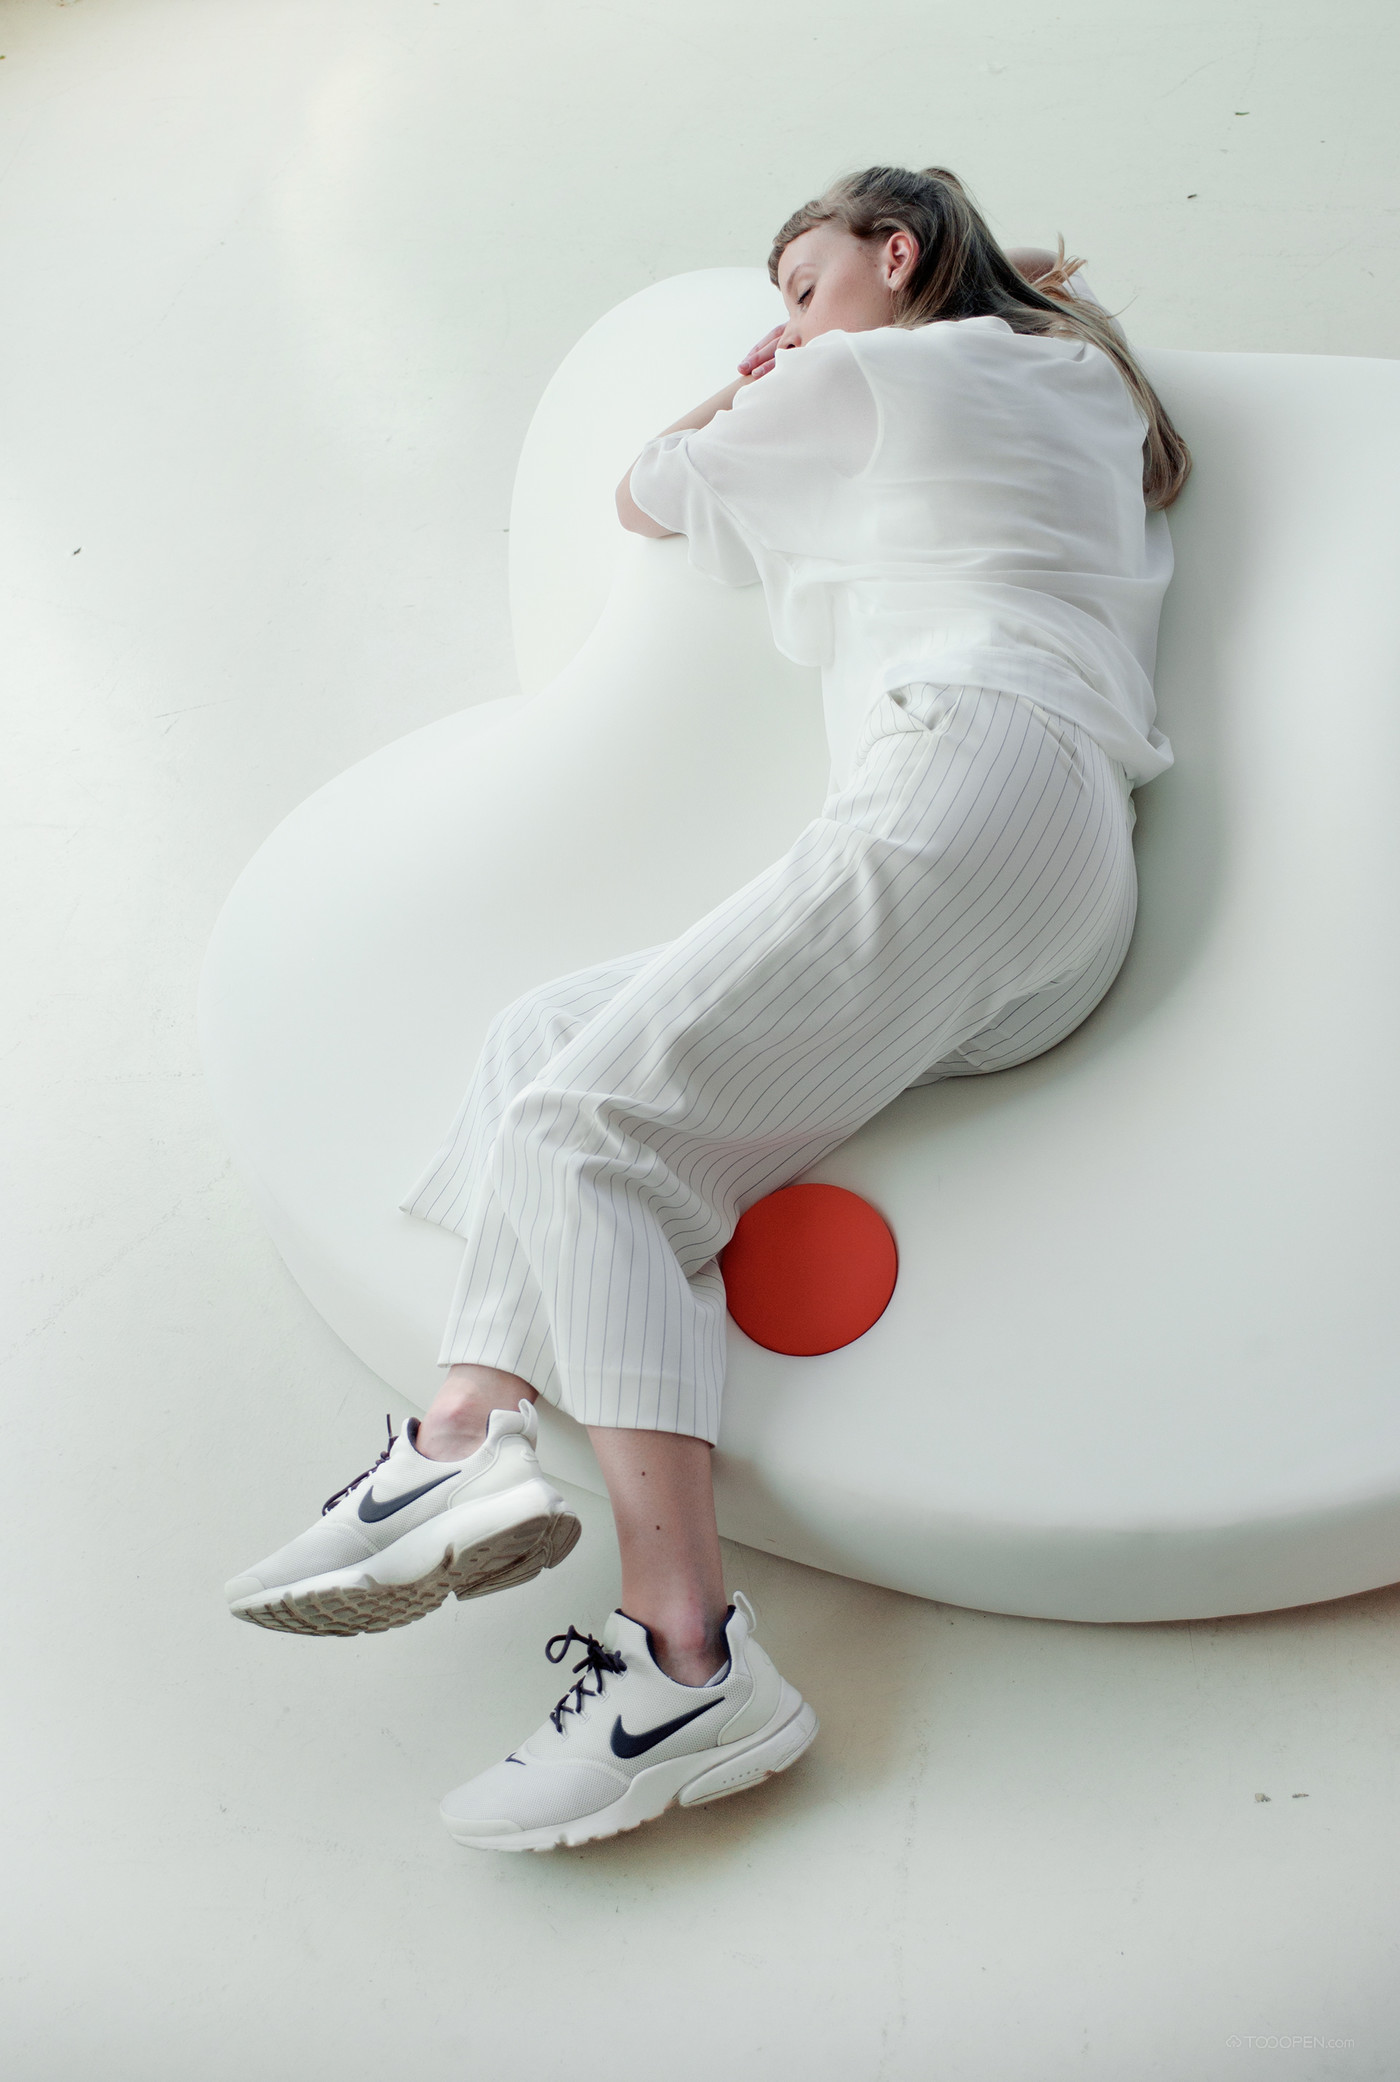 完美贴合人体泡沫午睡躺椅设计欣赏-04